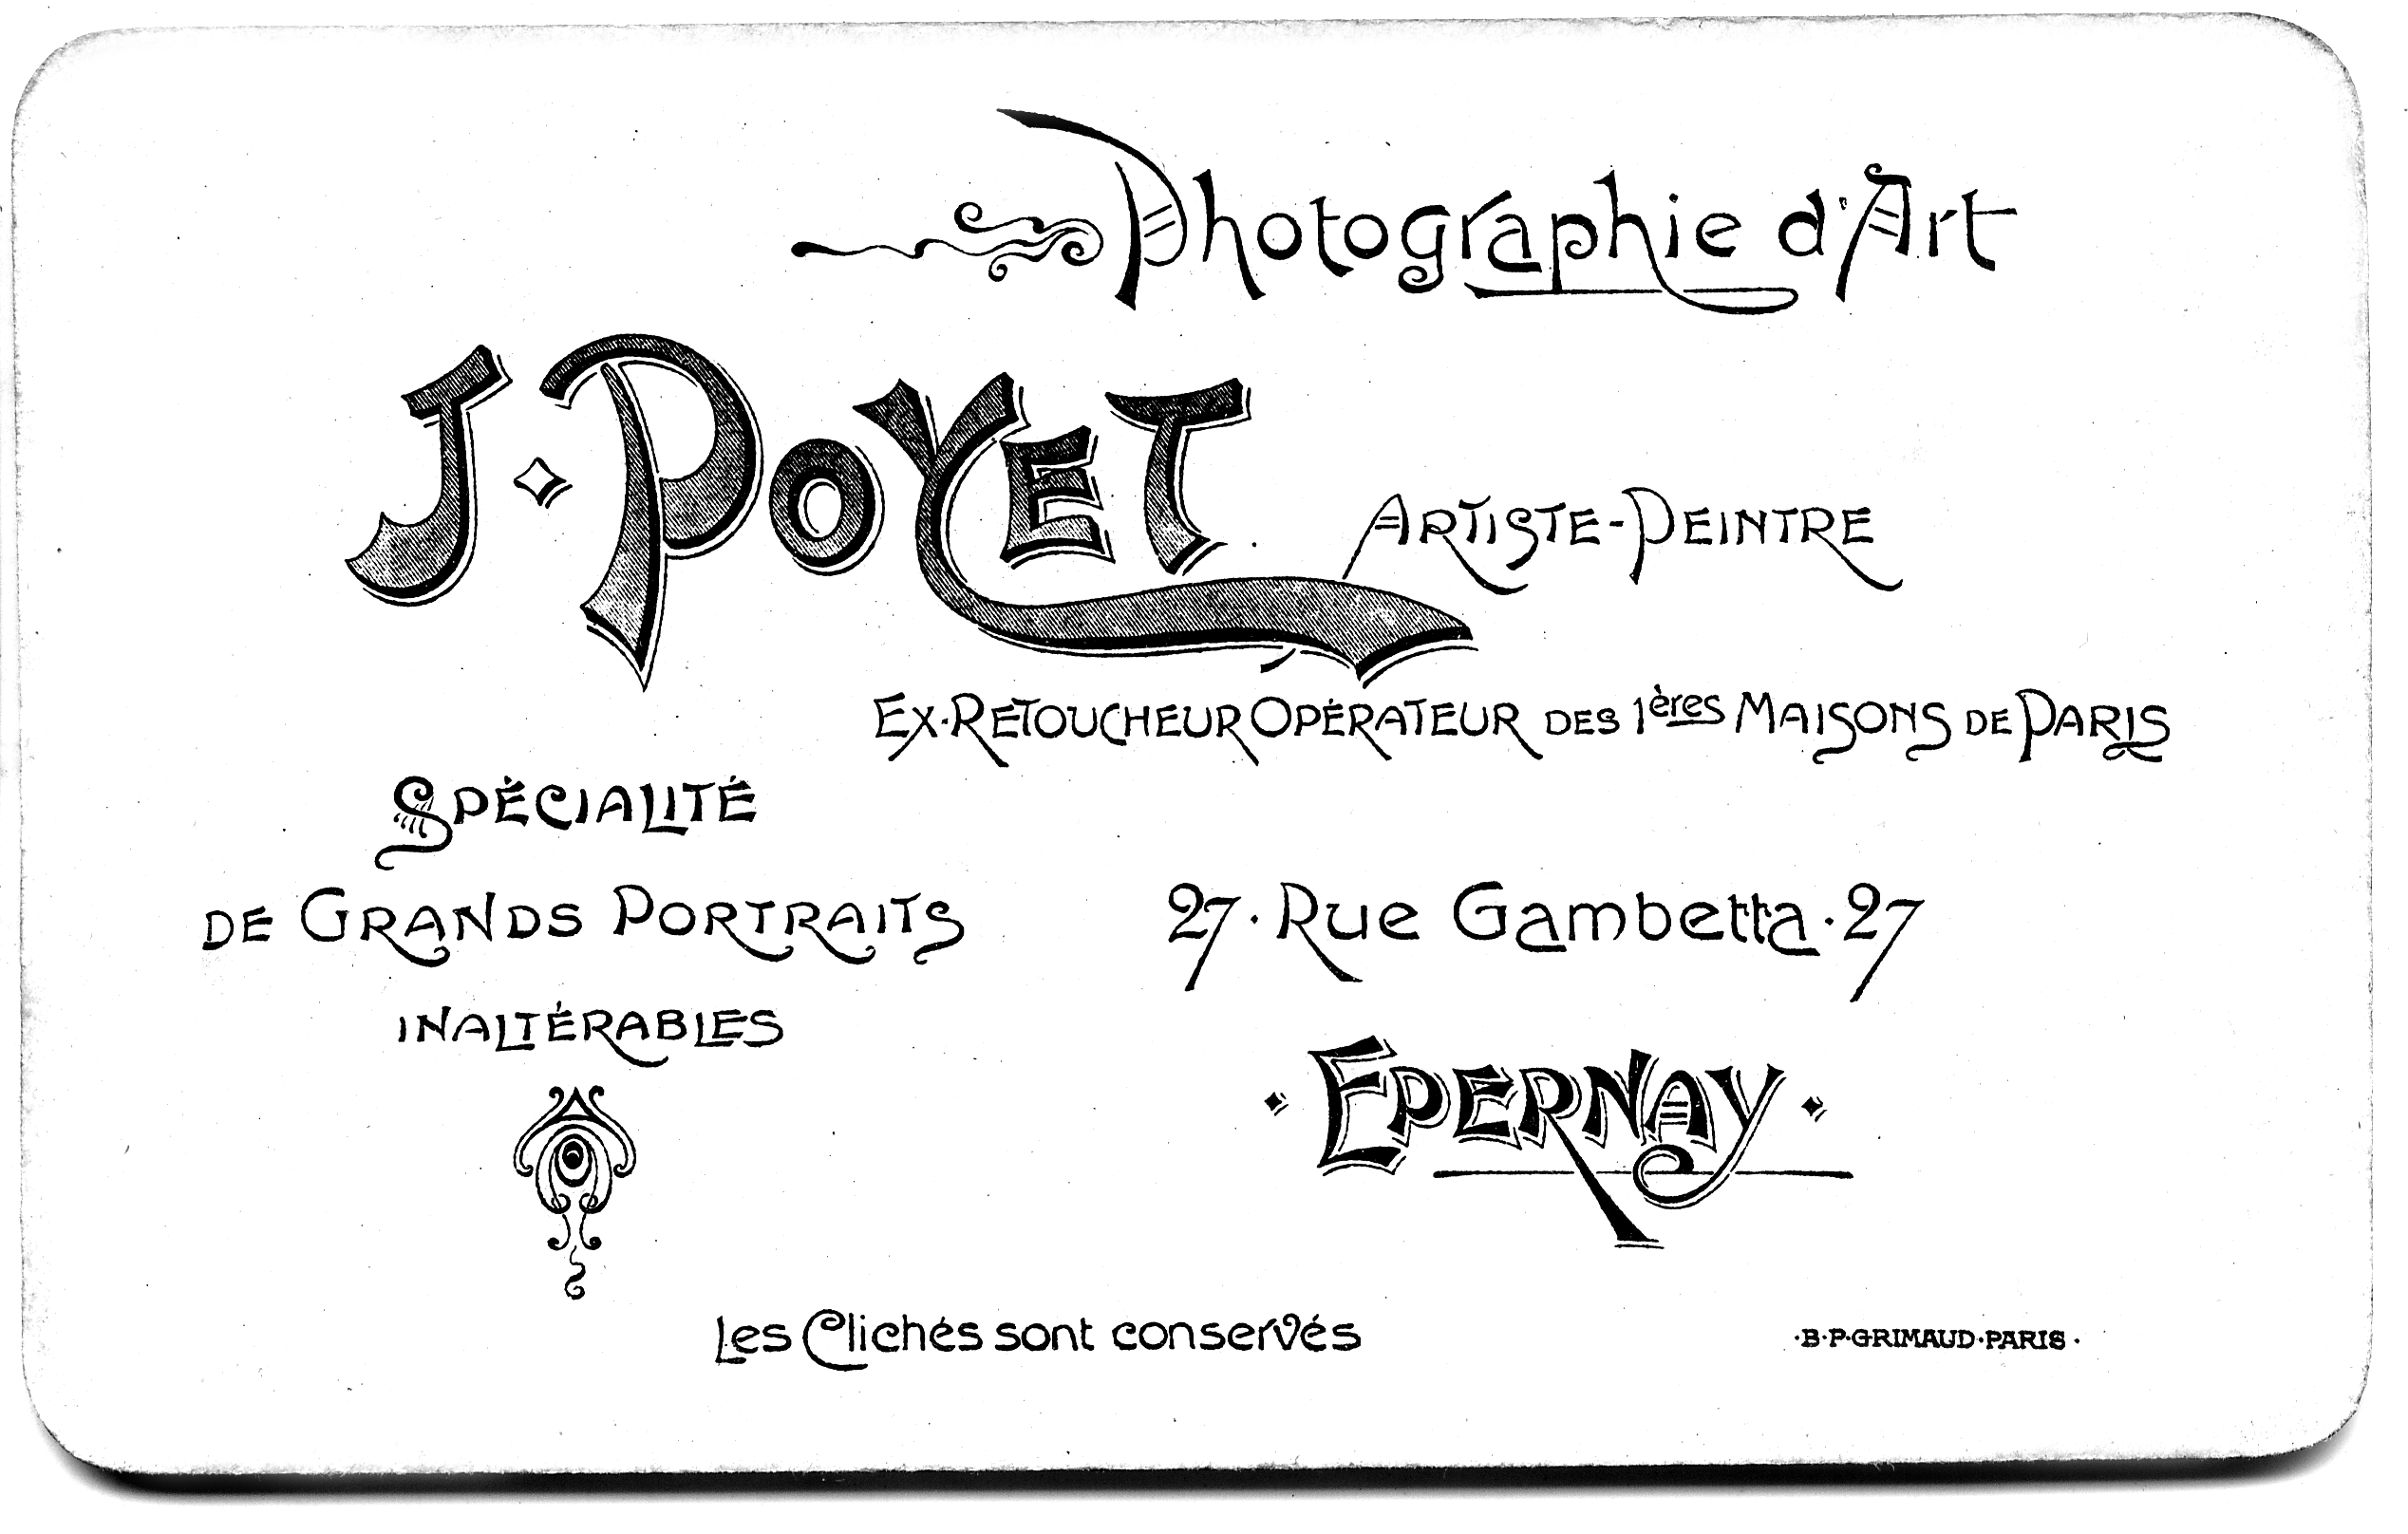 Jean Poyet, fonds photographique Poyet, francis dumelié